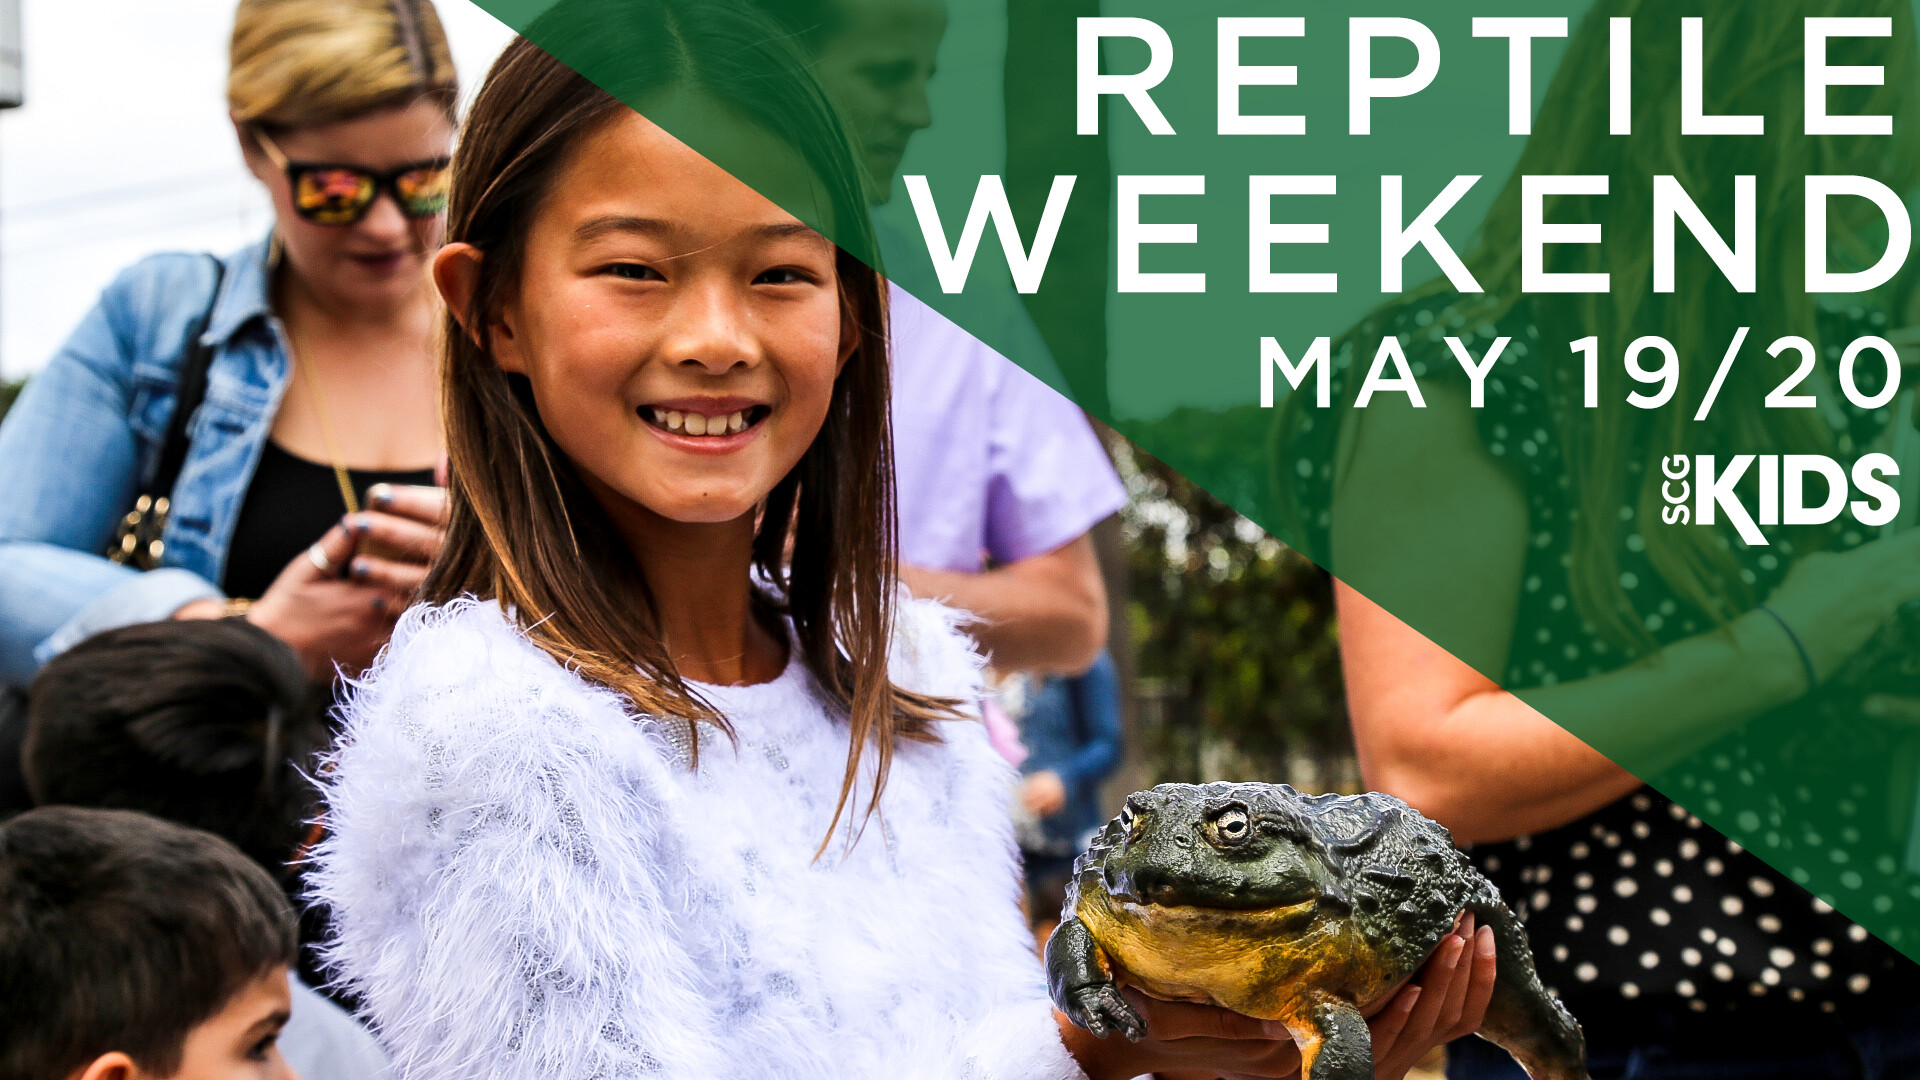 Reptile Weekend!